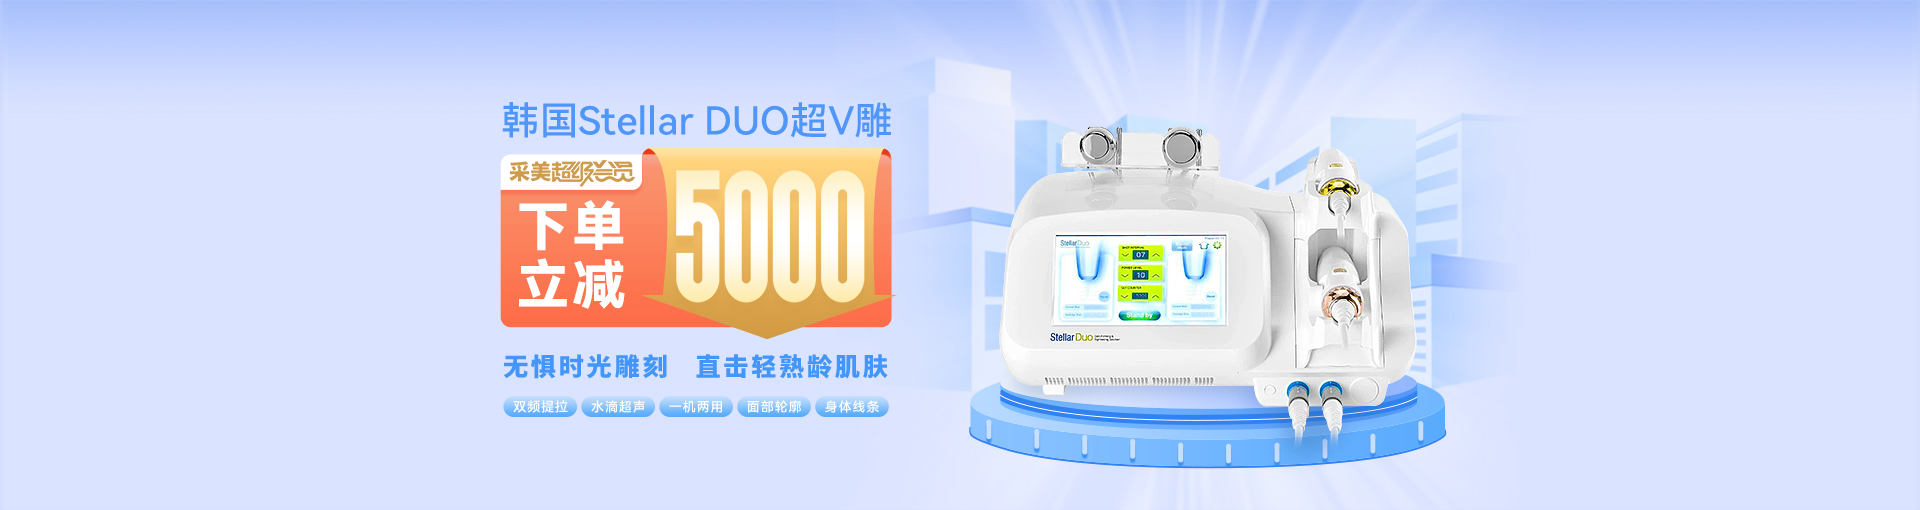 采美优惠   超级会员购买韩国Stellar DUO超V雕限时立减5000元！